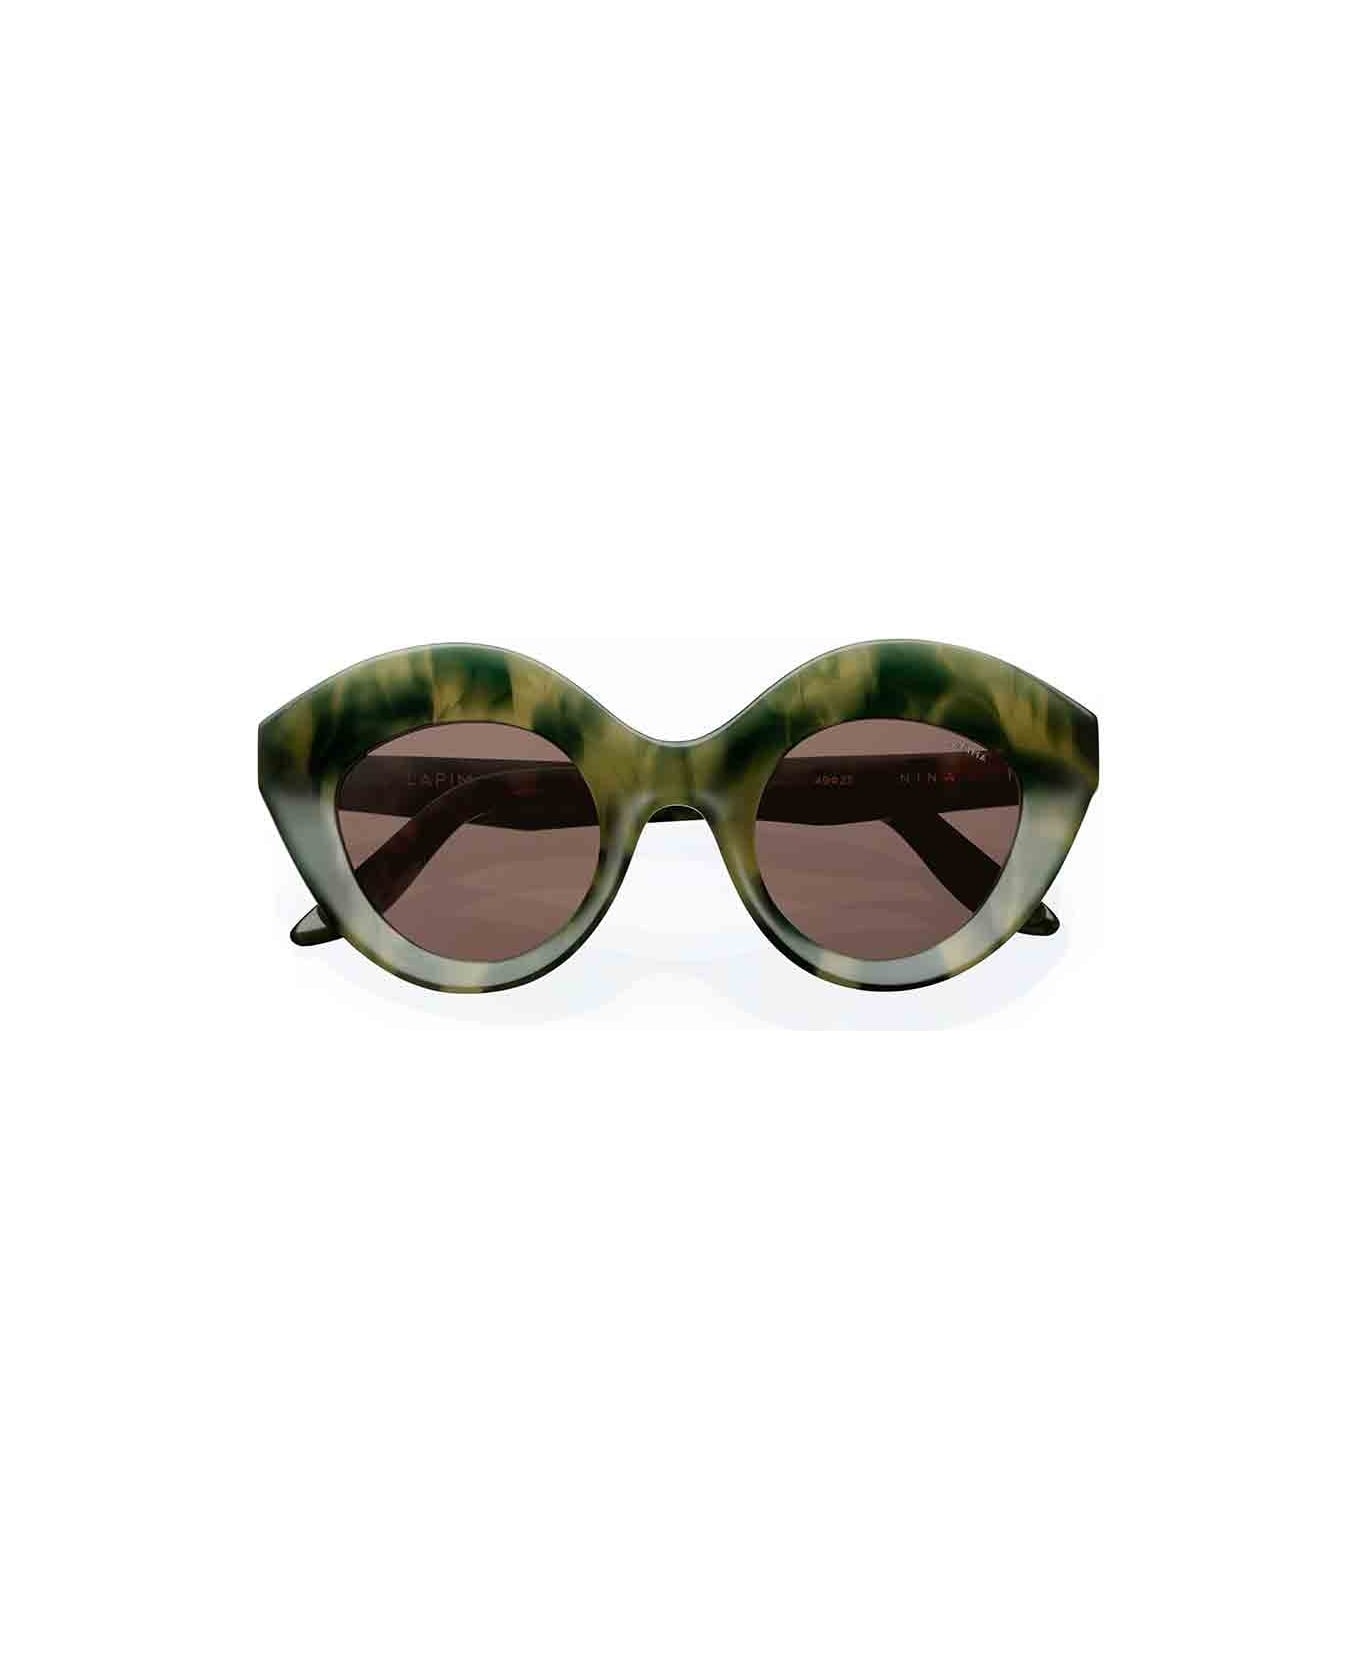 Lapima Eyewear - Verde/Marrone